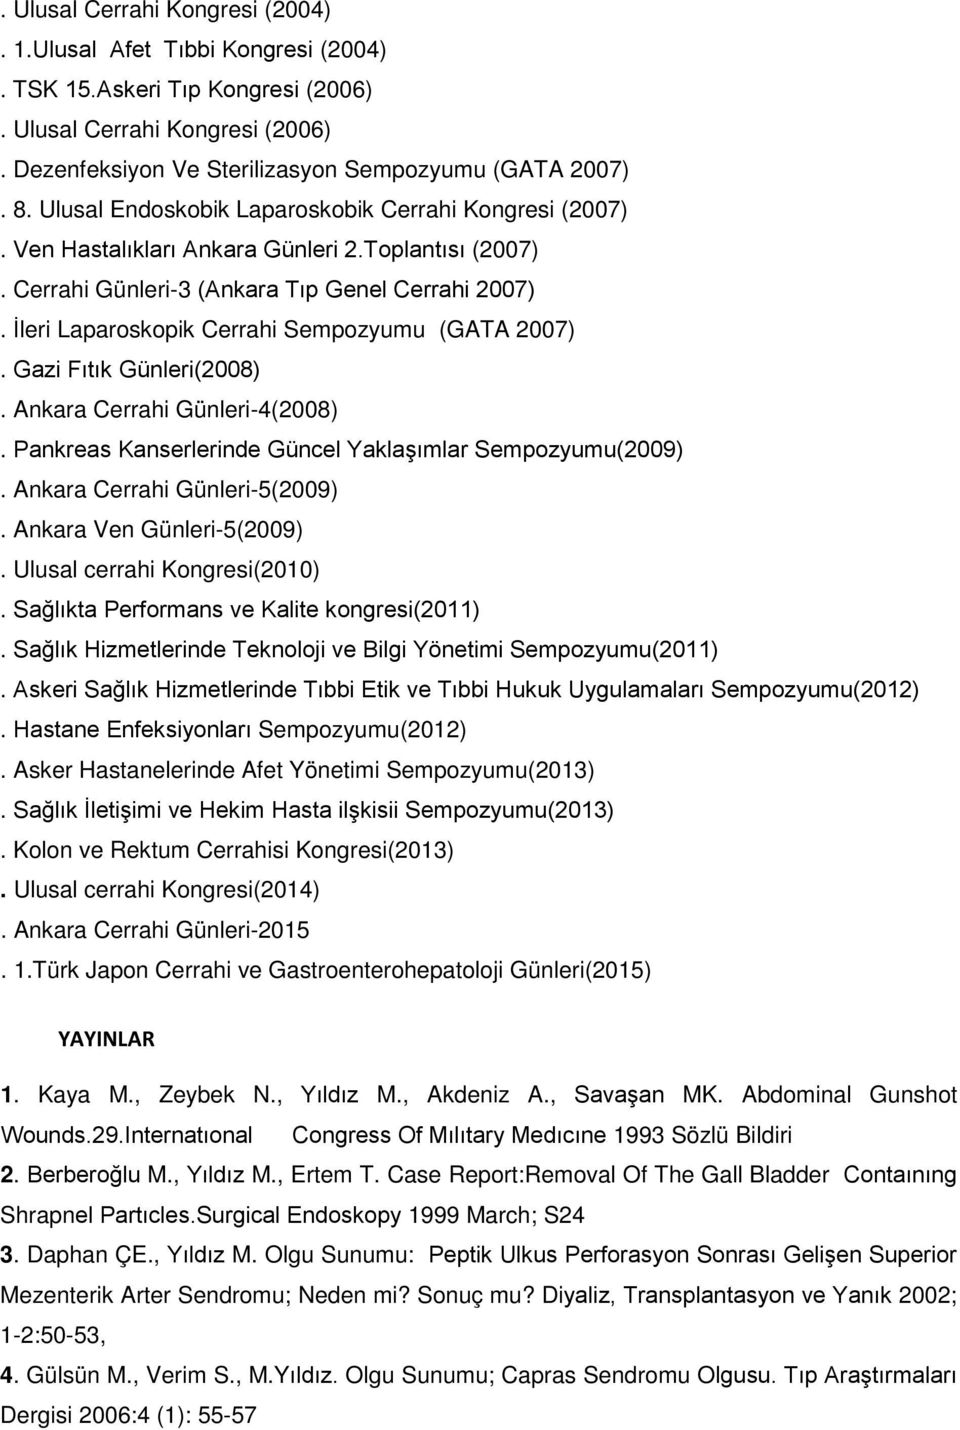 İleri Laparoskopik Cerrahi Sempozyumu (GATA 2007). Gazi Fıtık Günleri(2008). Ankara Cerrahi Günleri-4(2008). Pankreas Kanserlerinde Güncel Yaklaşımlar Sempozyumu(2009). Ankara Cerrahi Günleri-5(2009).